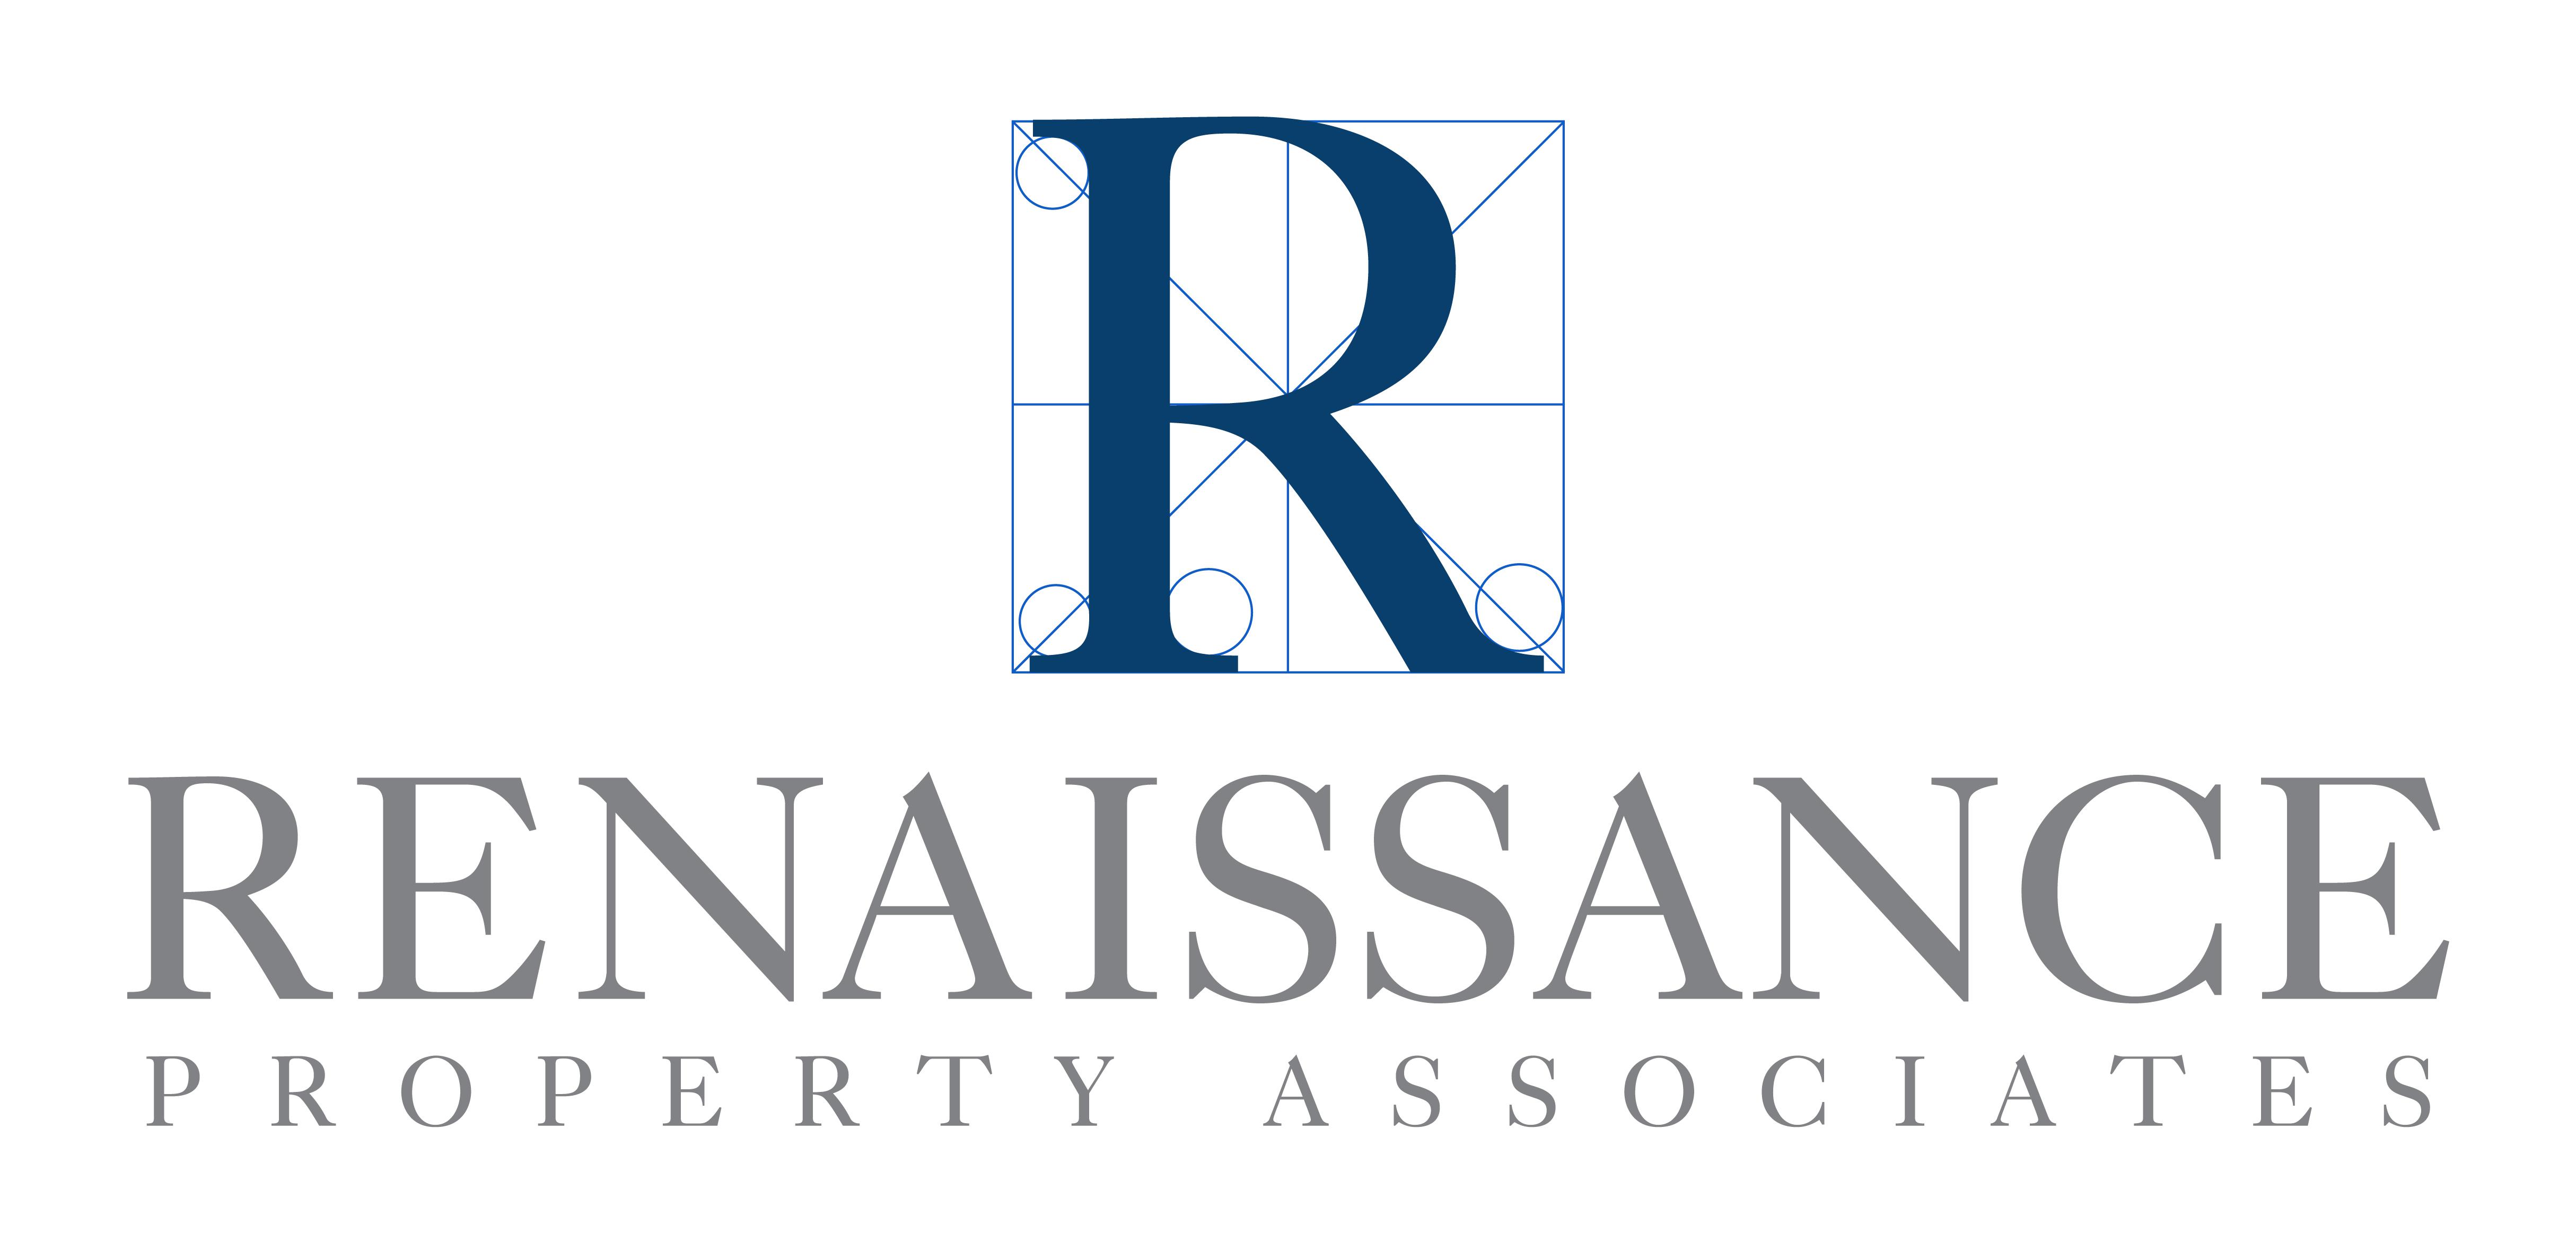 Renaissance Property Associates Logo